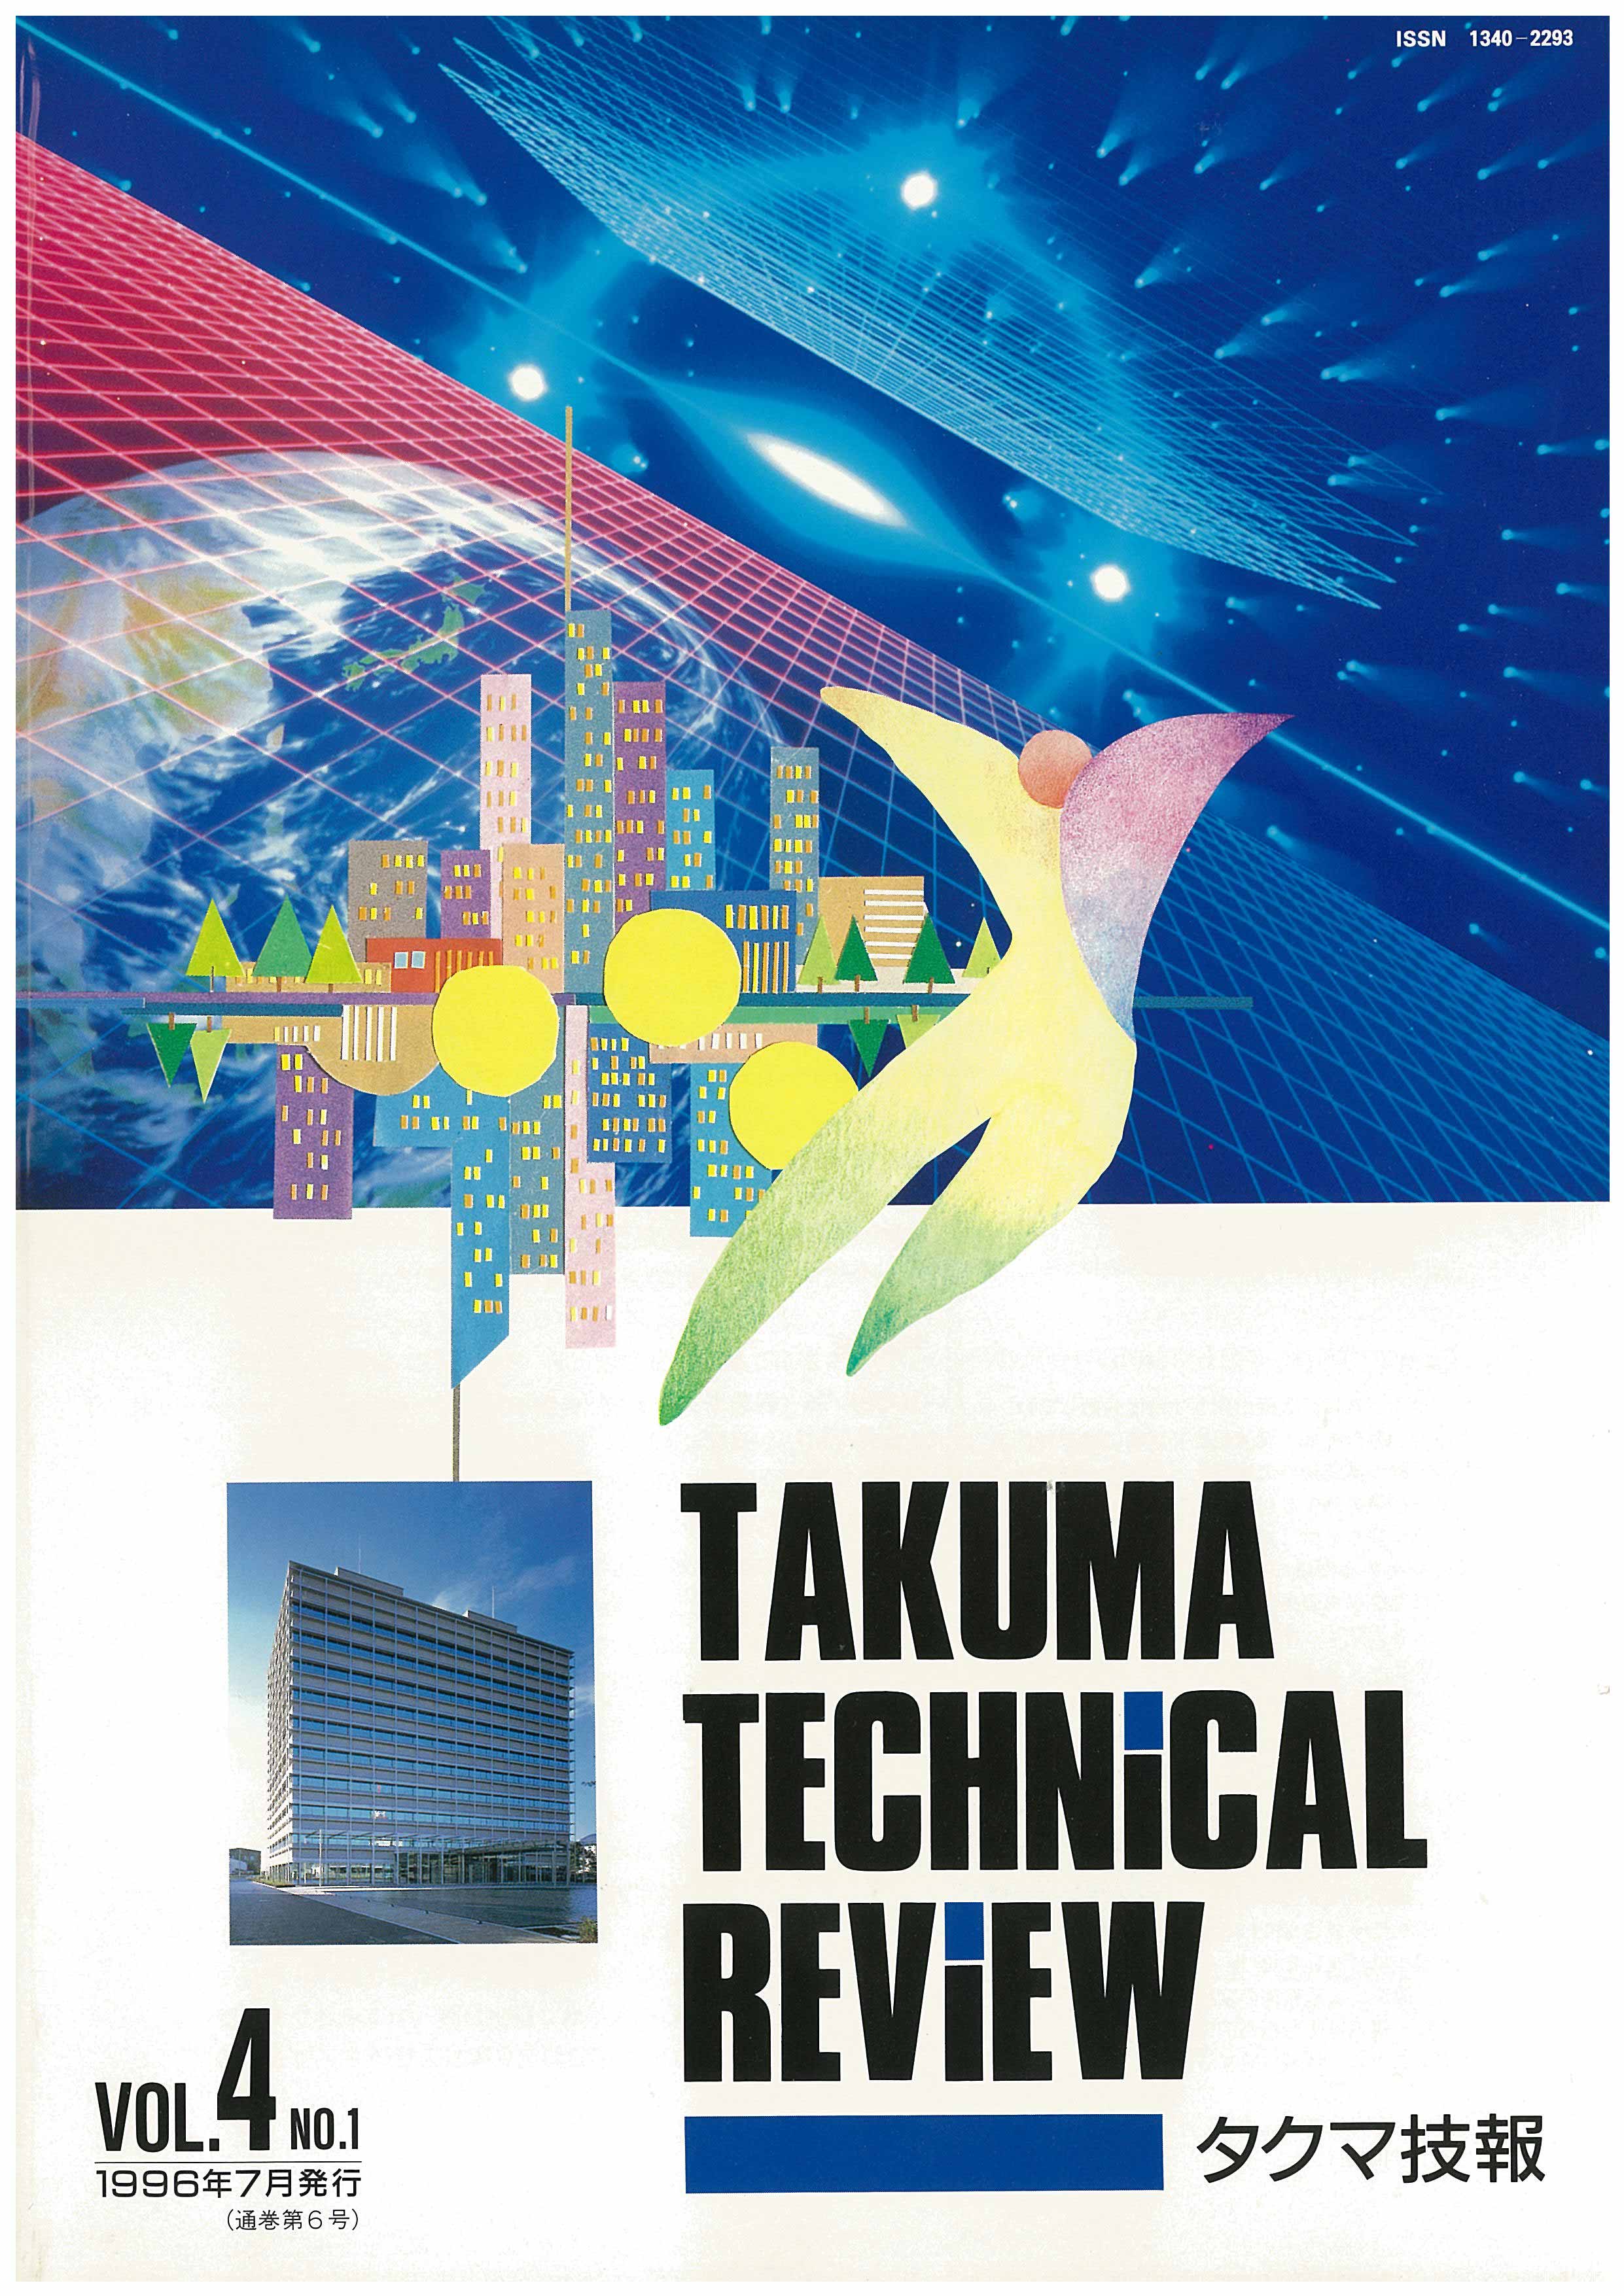 タクマ技報 VOL.4 NO.1（1996年06月発行）